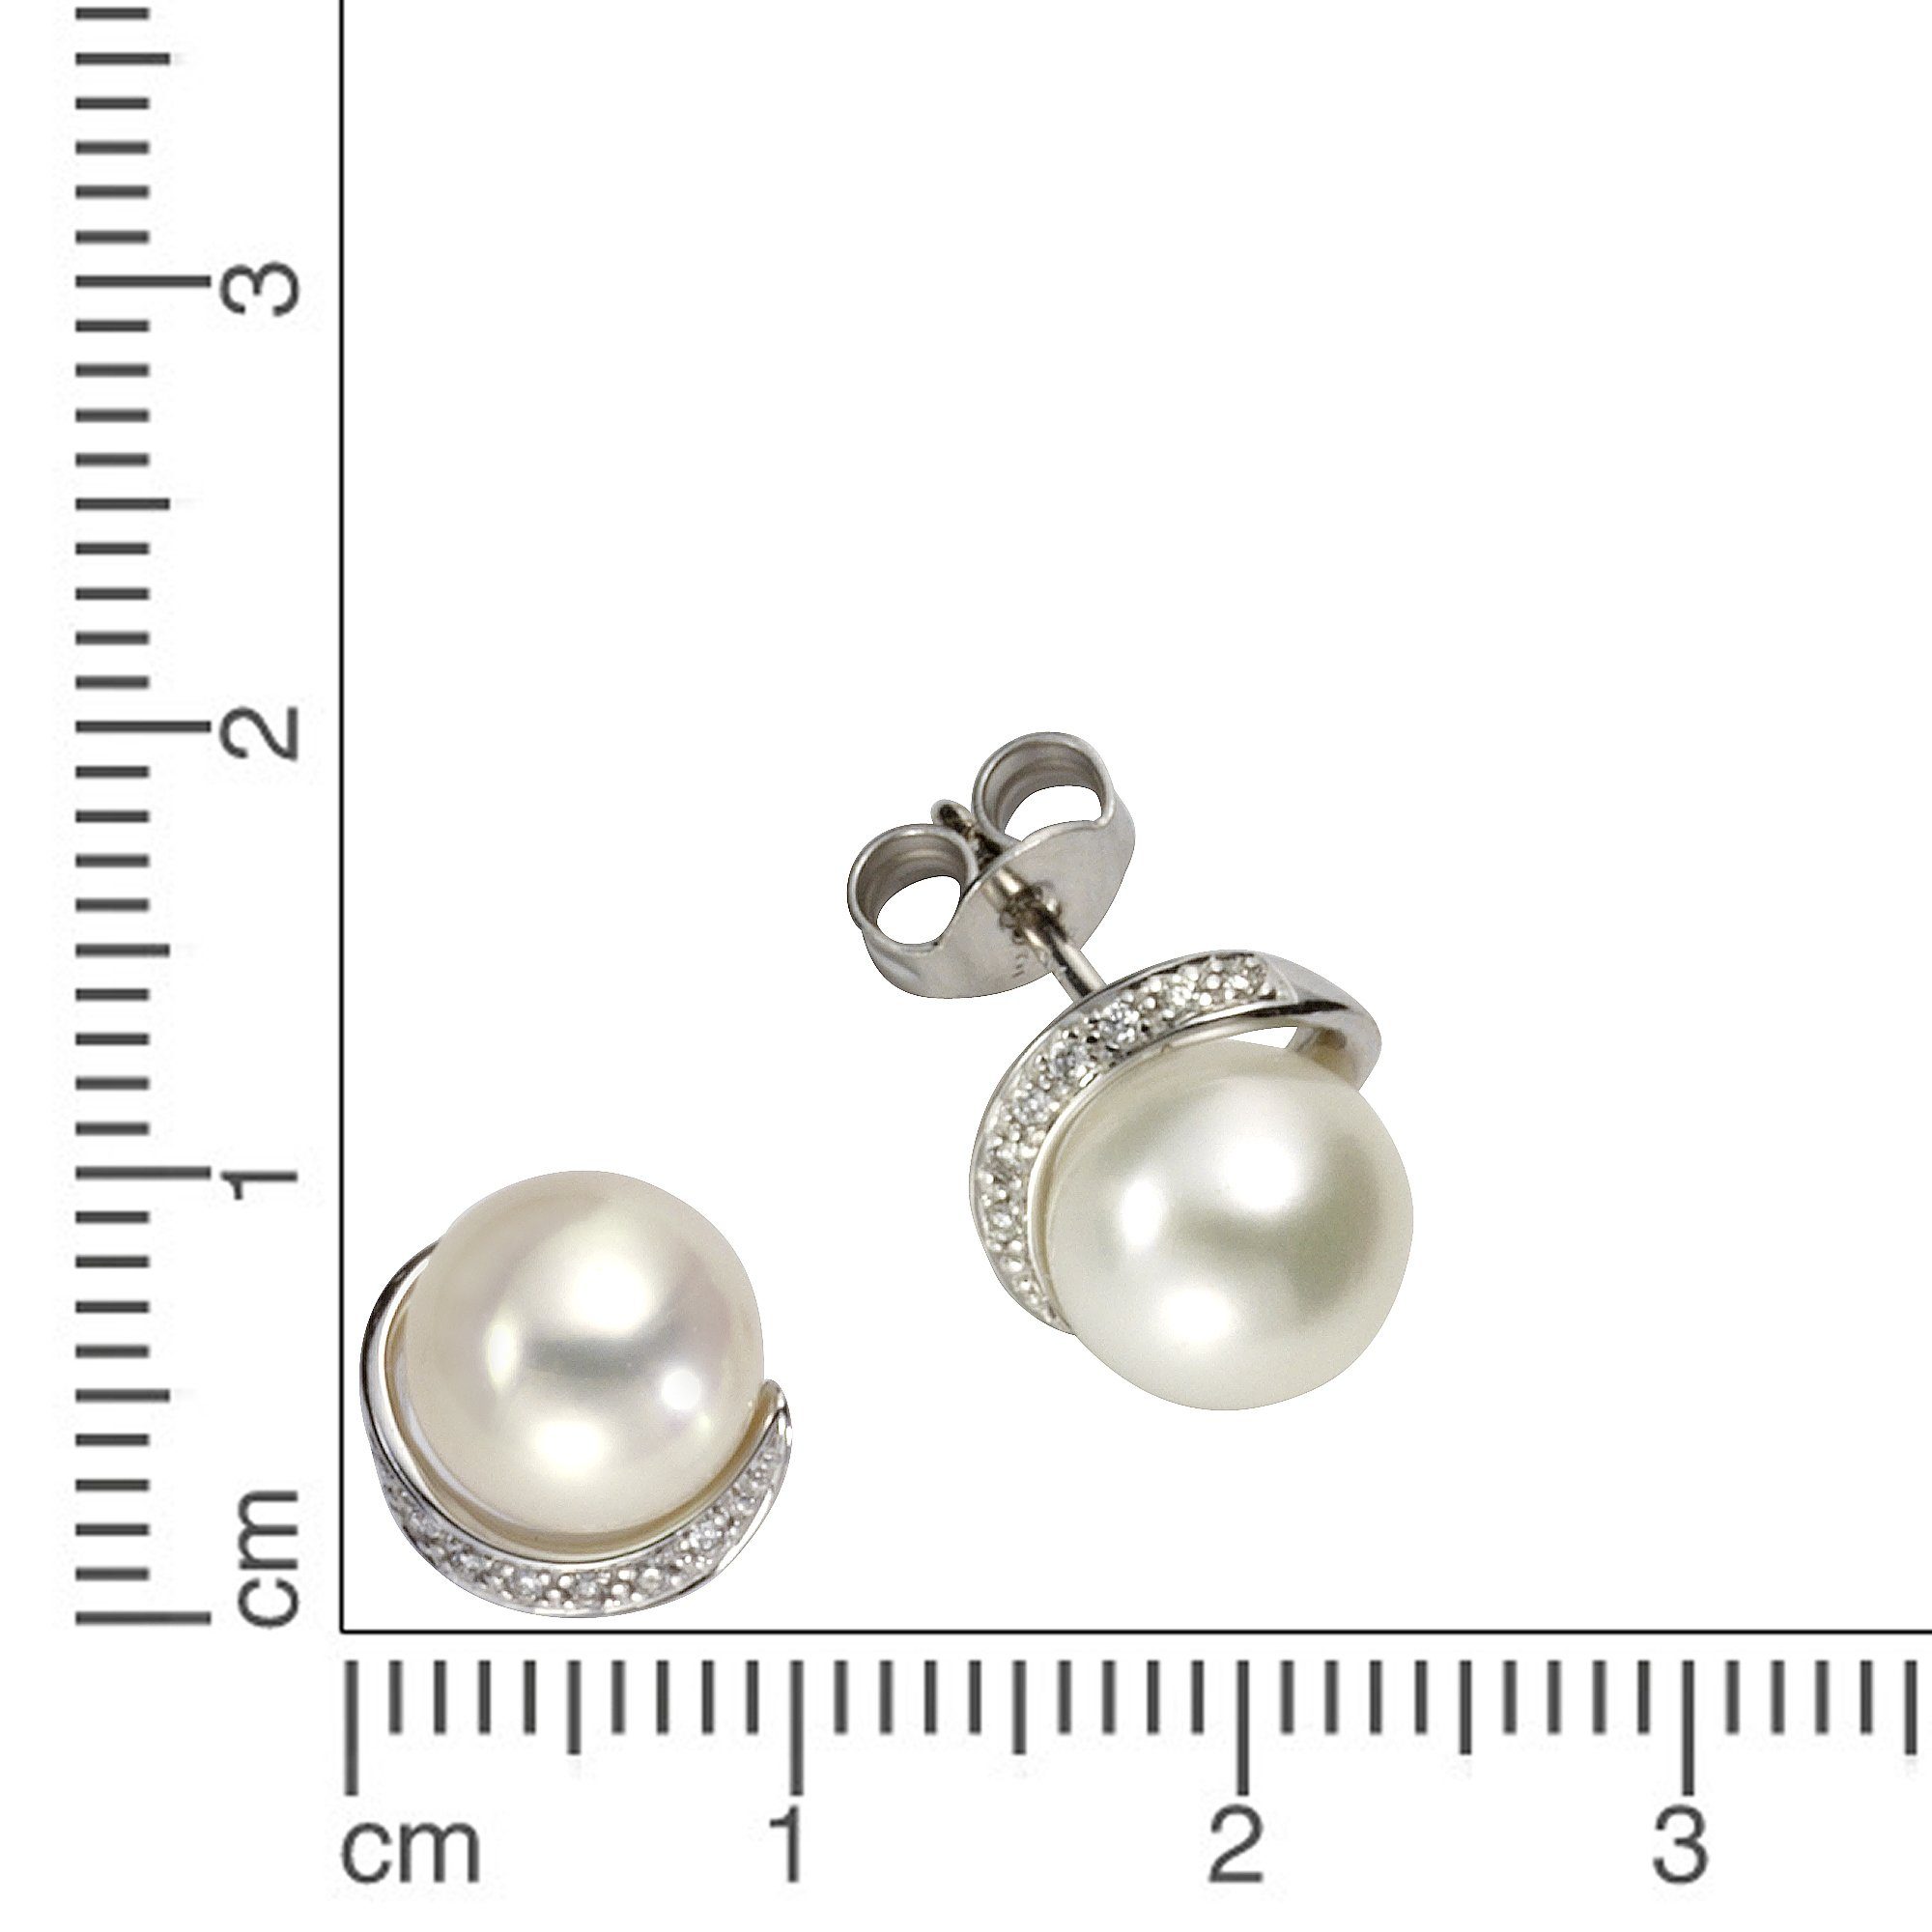 Ohrstecker Perlen + Brillanten Gold weiß Paar Orolino 585 0,05ct.